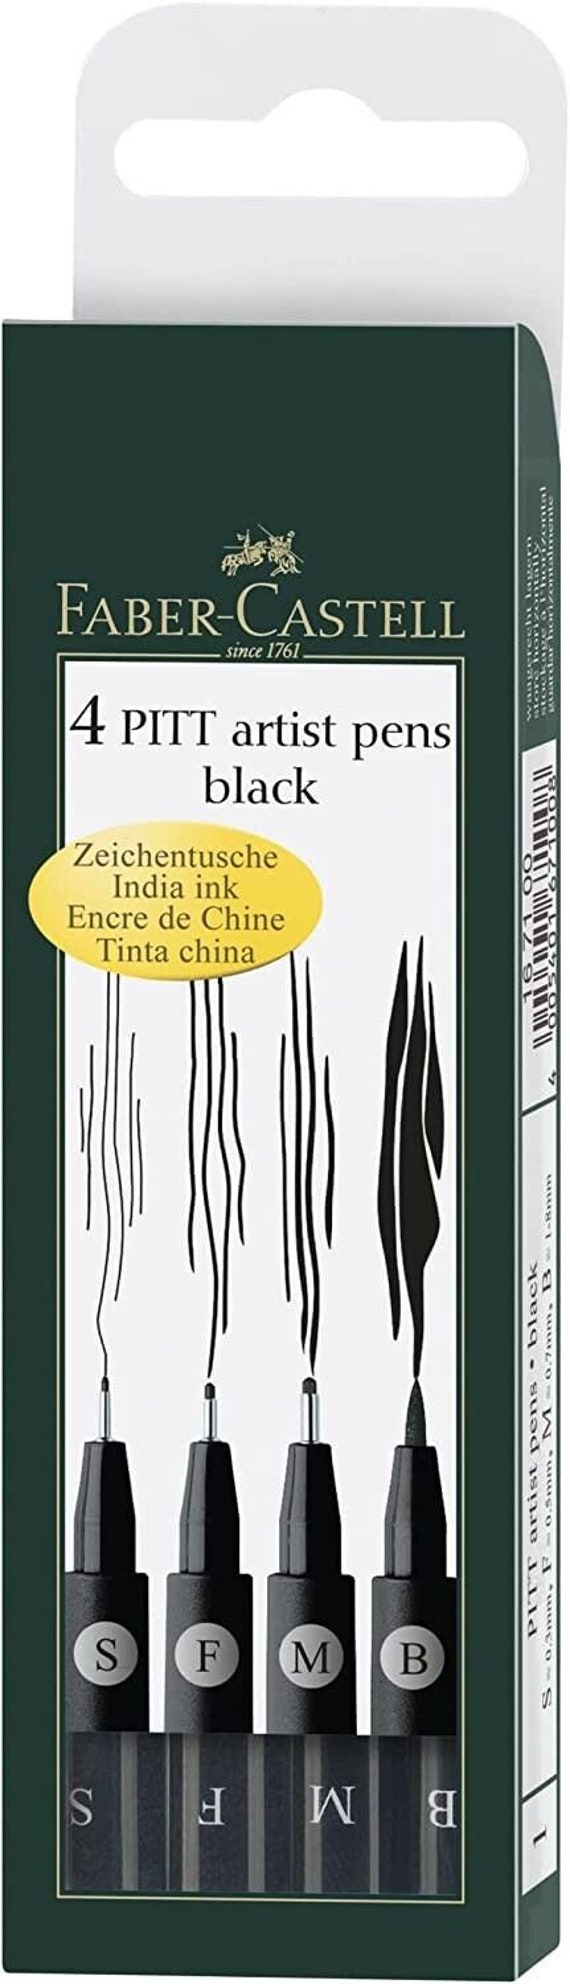 Faber-Castell PITT Artist Pens 